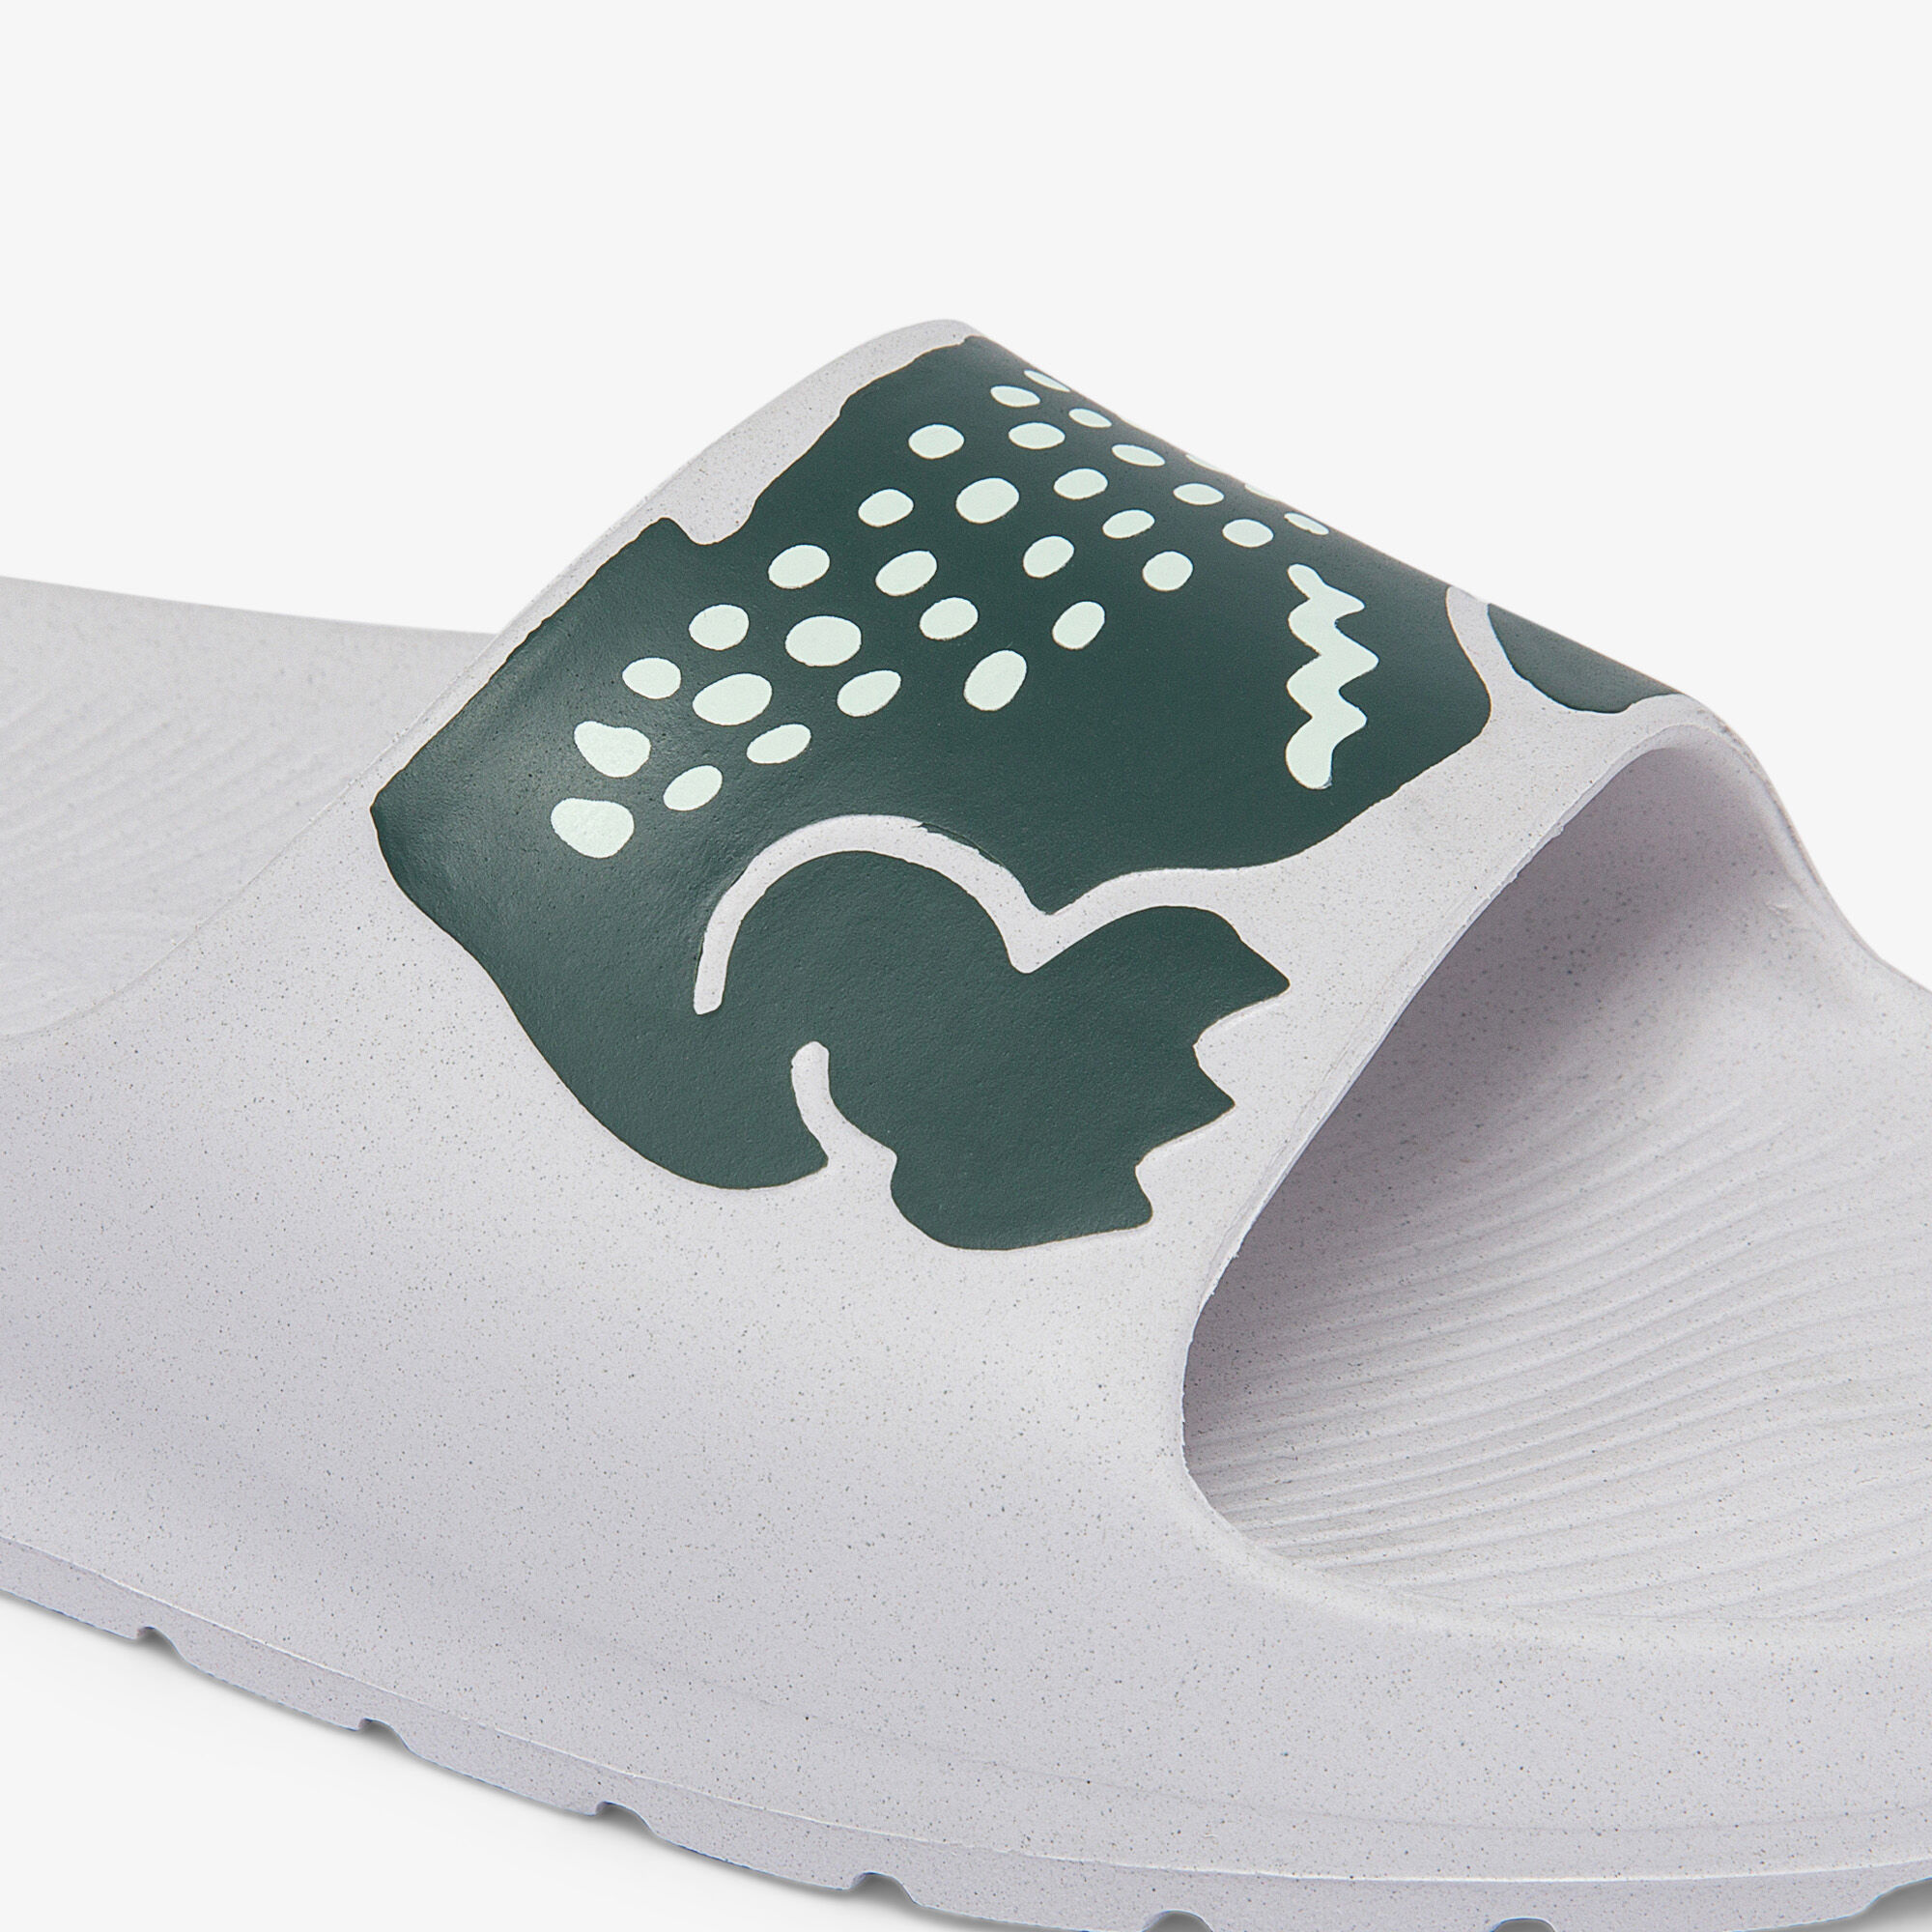 حذاء مفتوح بطبعة تمساح من خامات صناعية للنساء مجموعة Croco 2.0